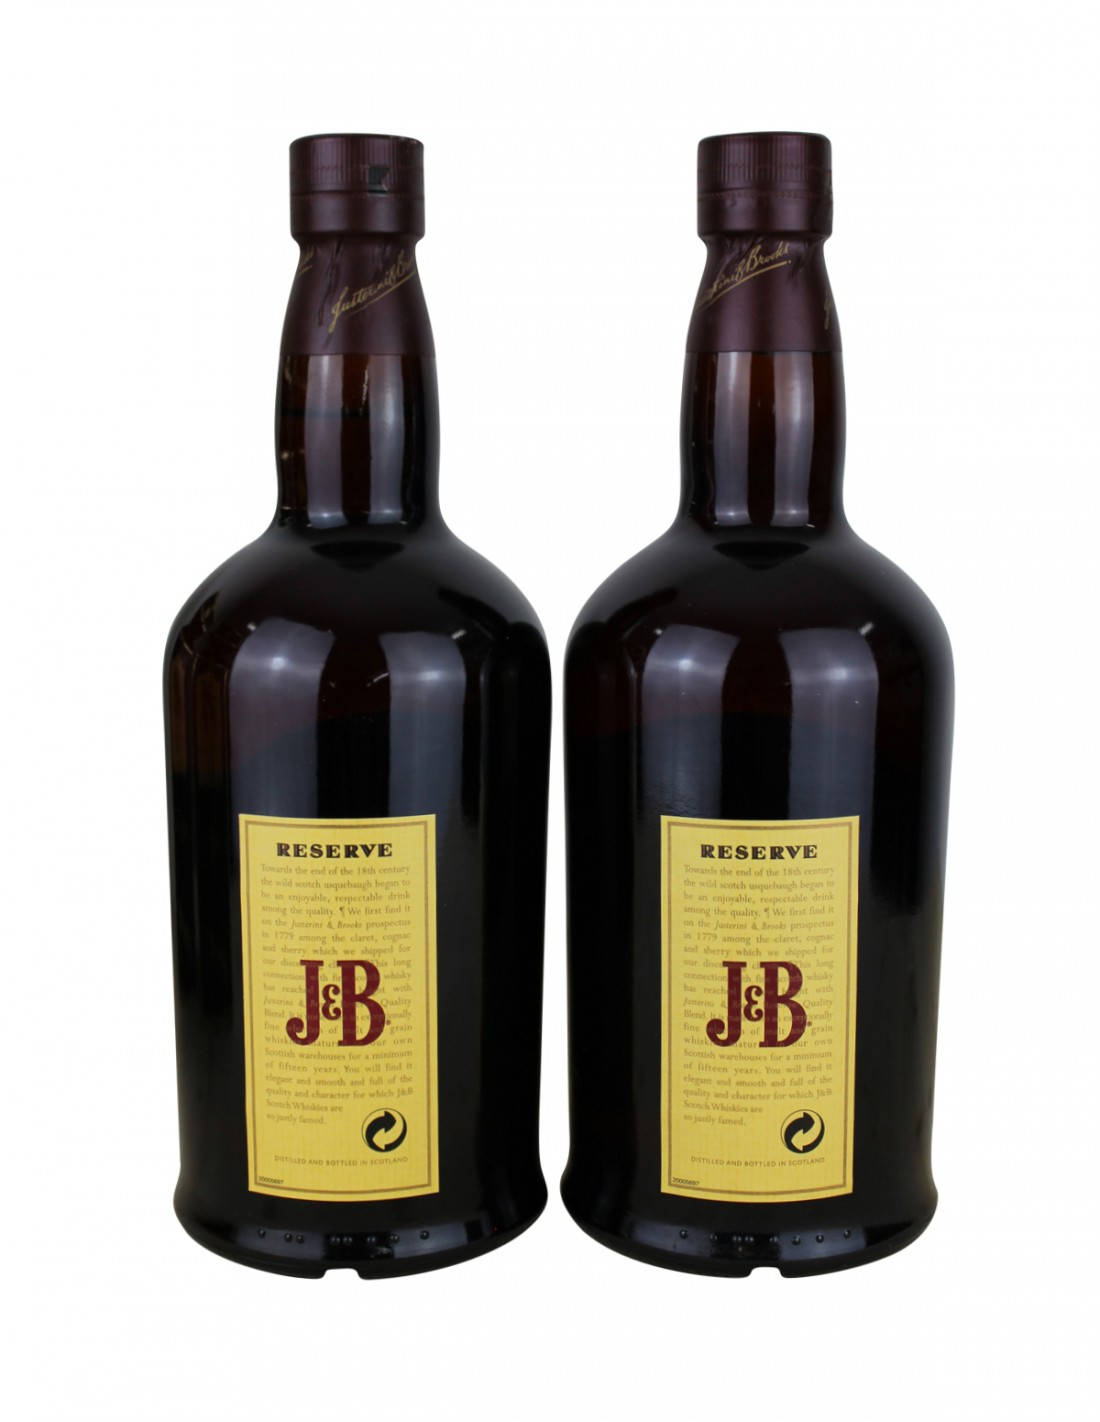 J&breserve Black Bottle: J&b Reserve Svart Flaska. Wallpaper